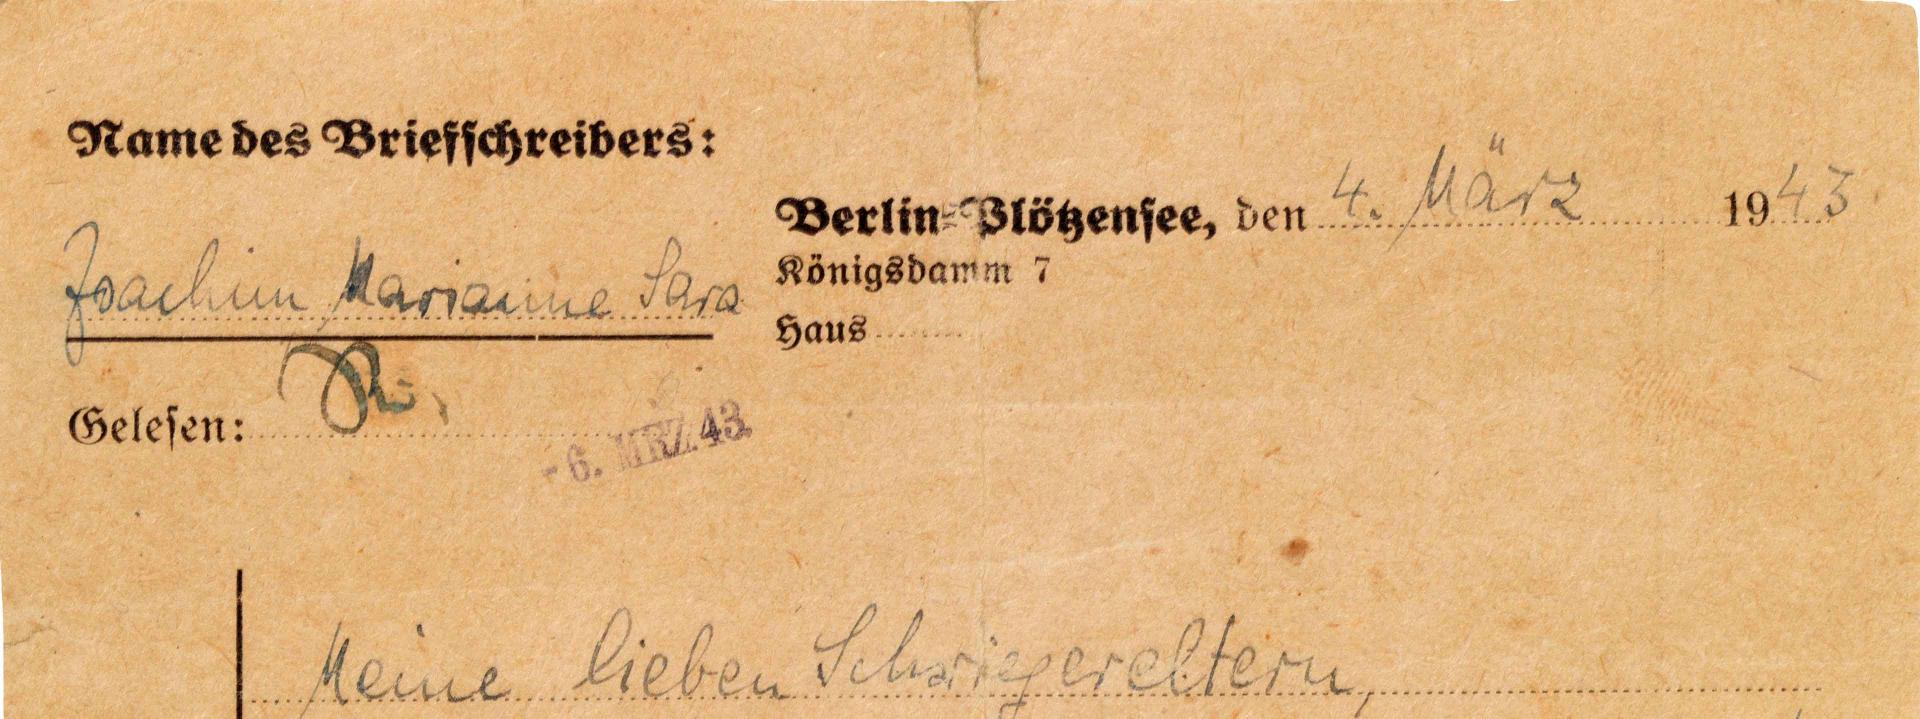 Handwritten letter on a letterhead form from Berlin-Plötzensee.